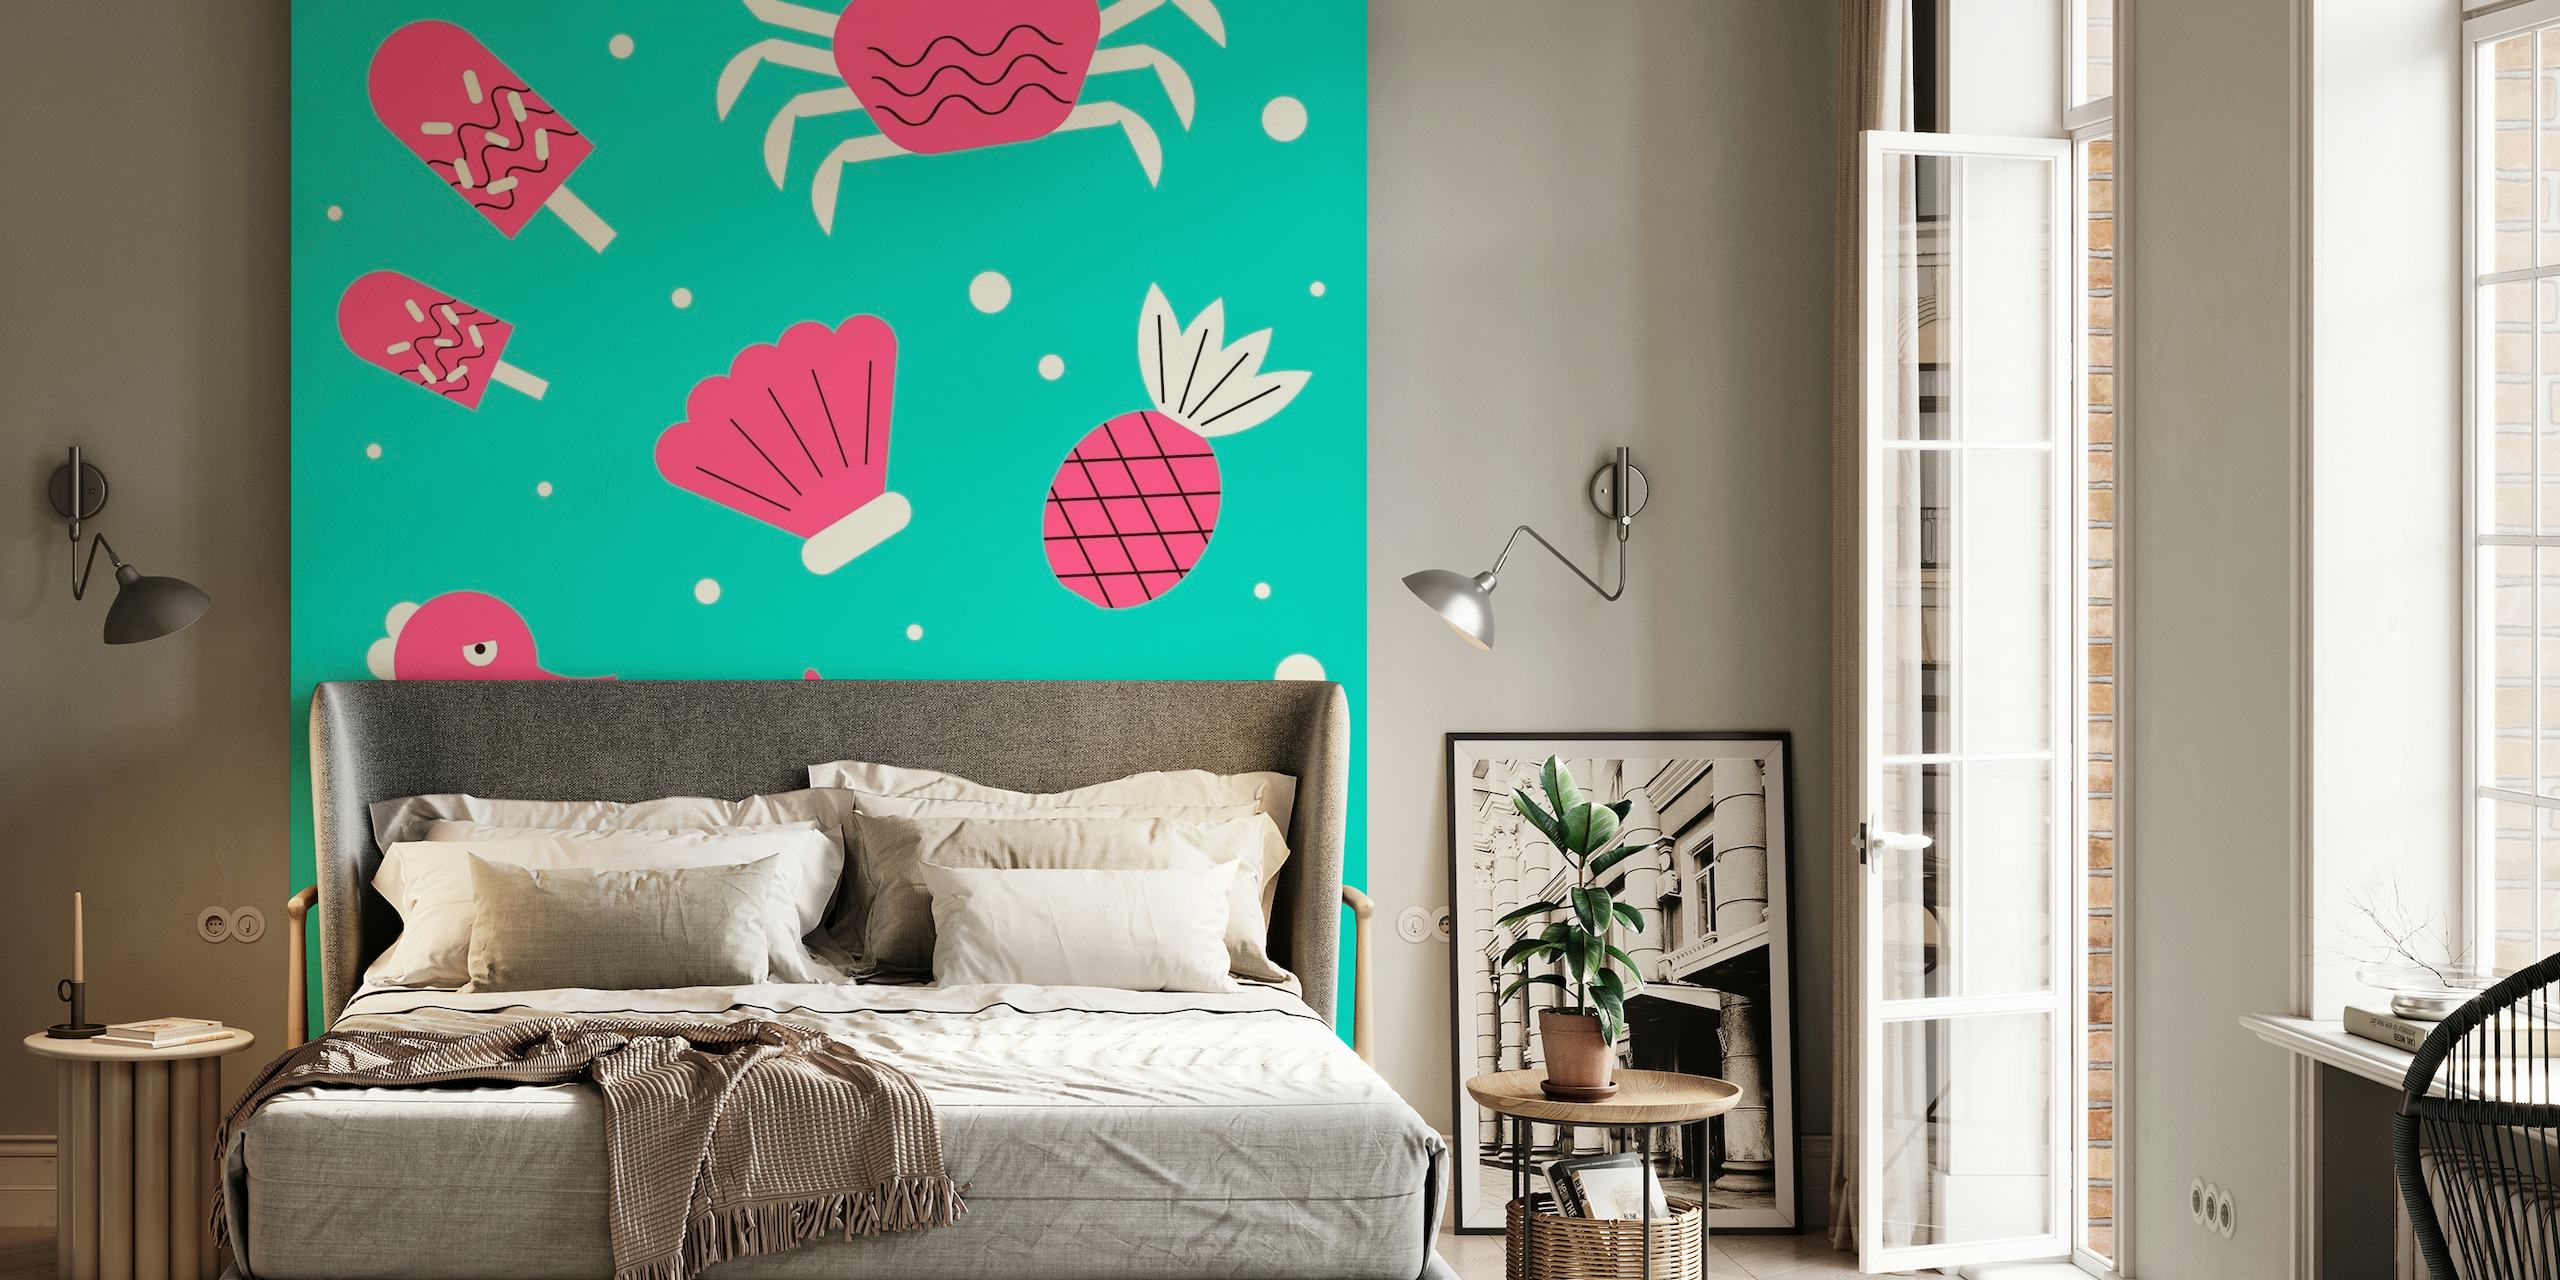 Miami Summer-Wandbild mit Cartoon-Flamingo, Krabbe, Ananas und anderen Sommerikonen auf Aqua-Hintergrund